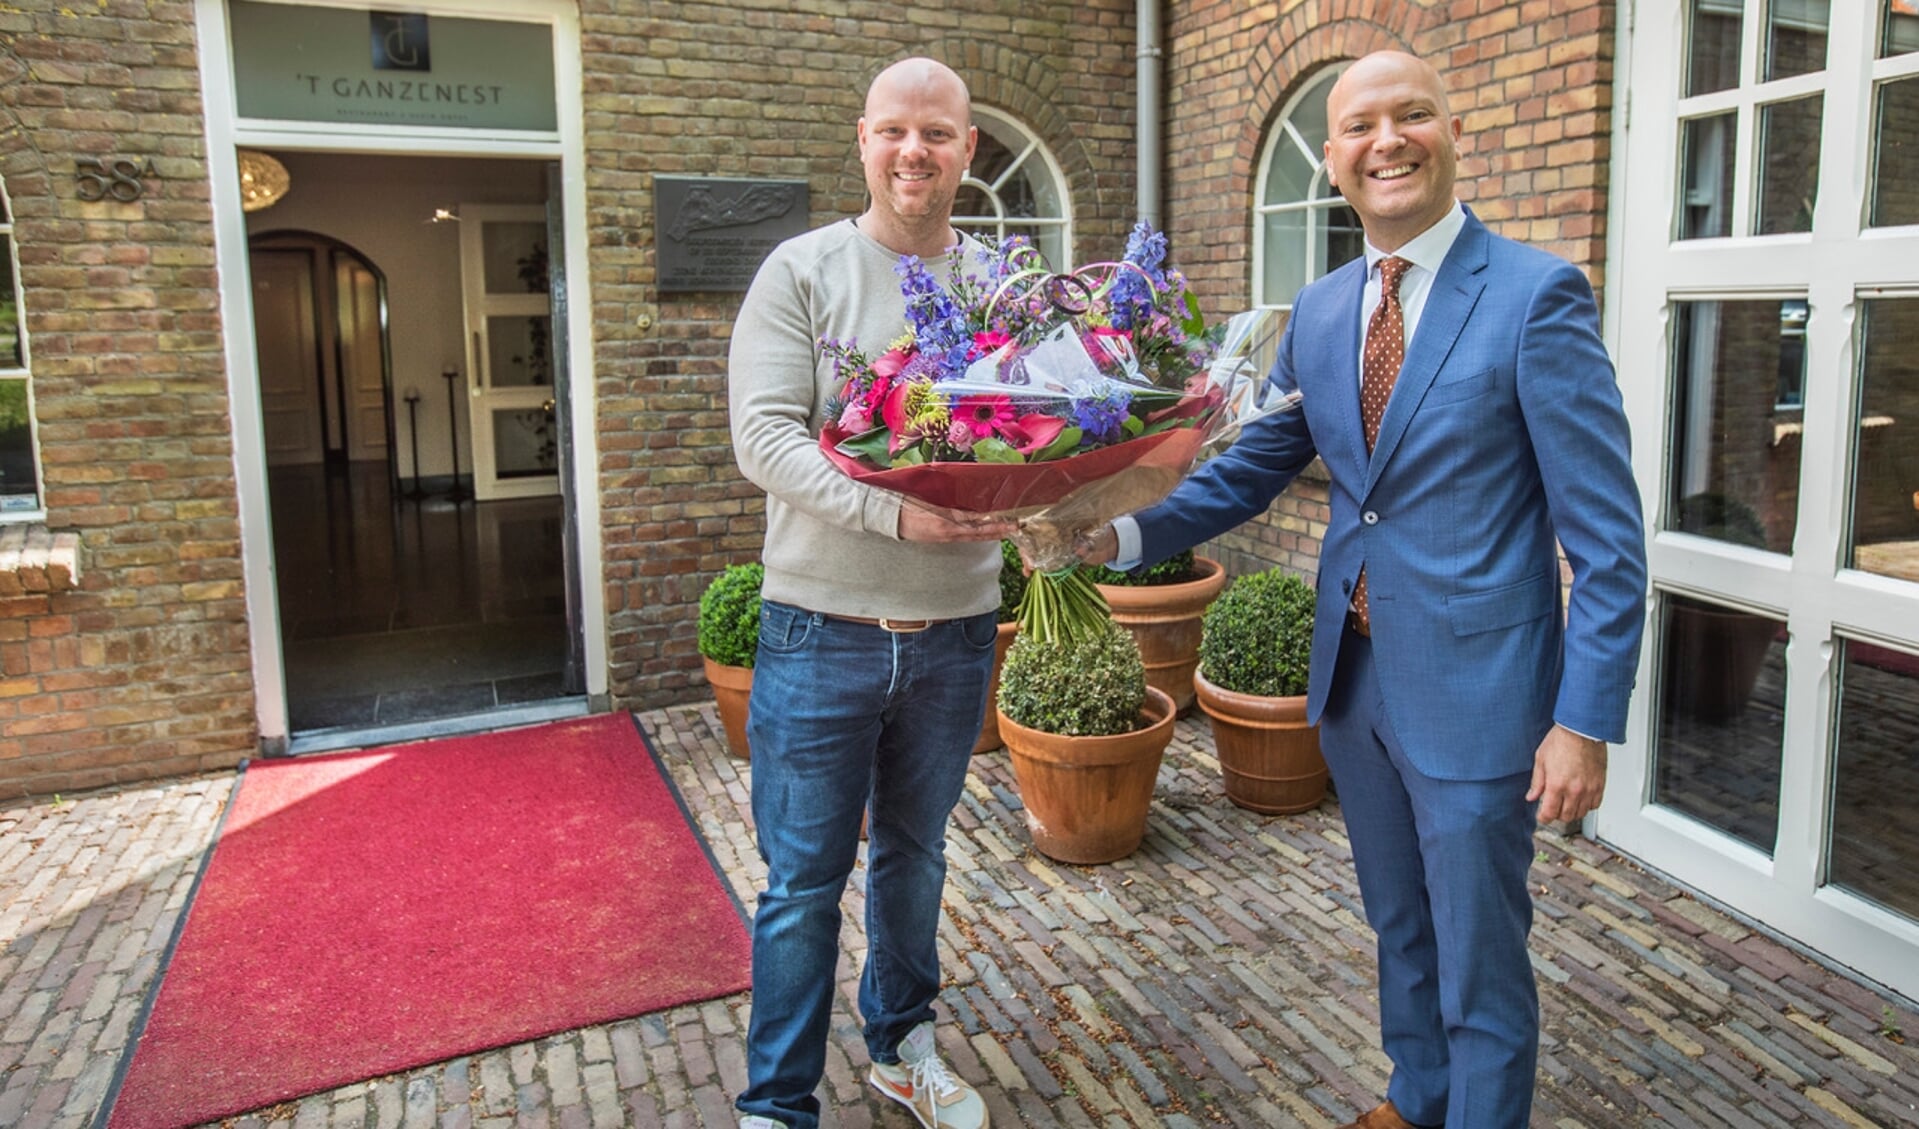 Wethouder Armand van de Laar komt een bloemetje brengen bij Erik Tas, die een Michelinster heeft verdiend met zijn restaurant 't Ganzenest.